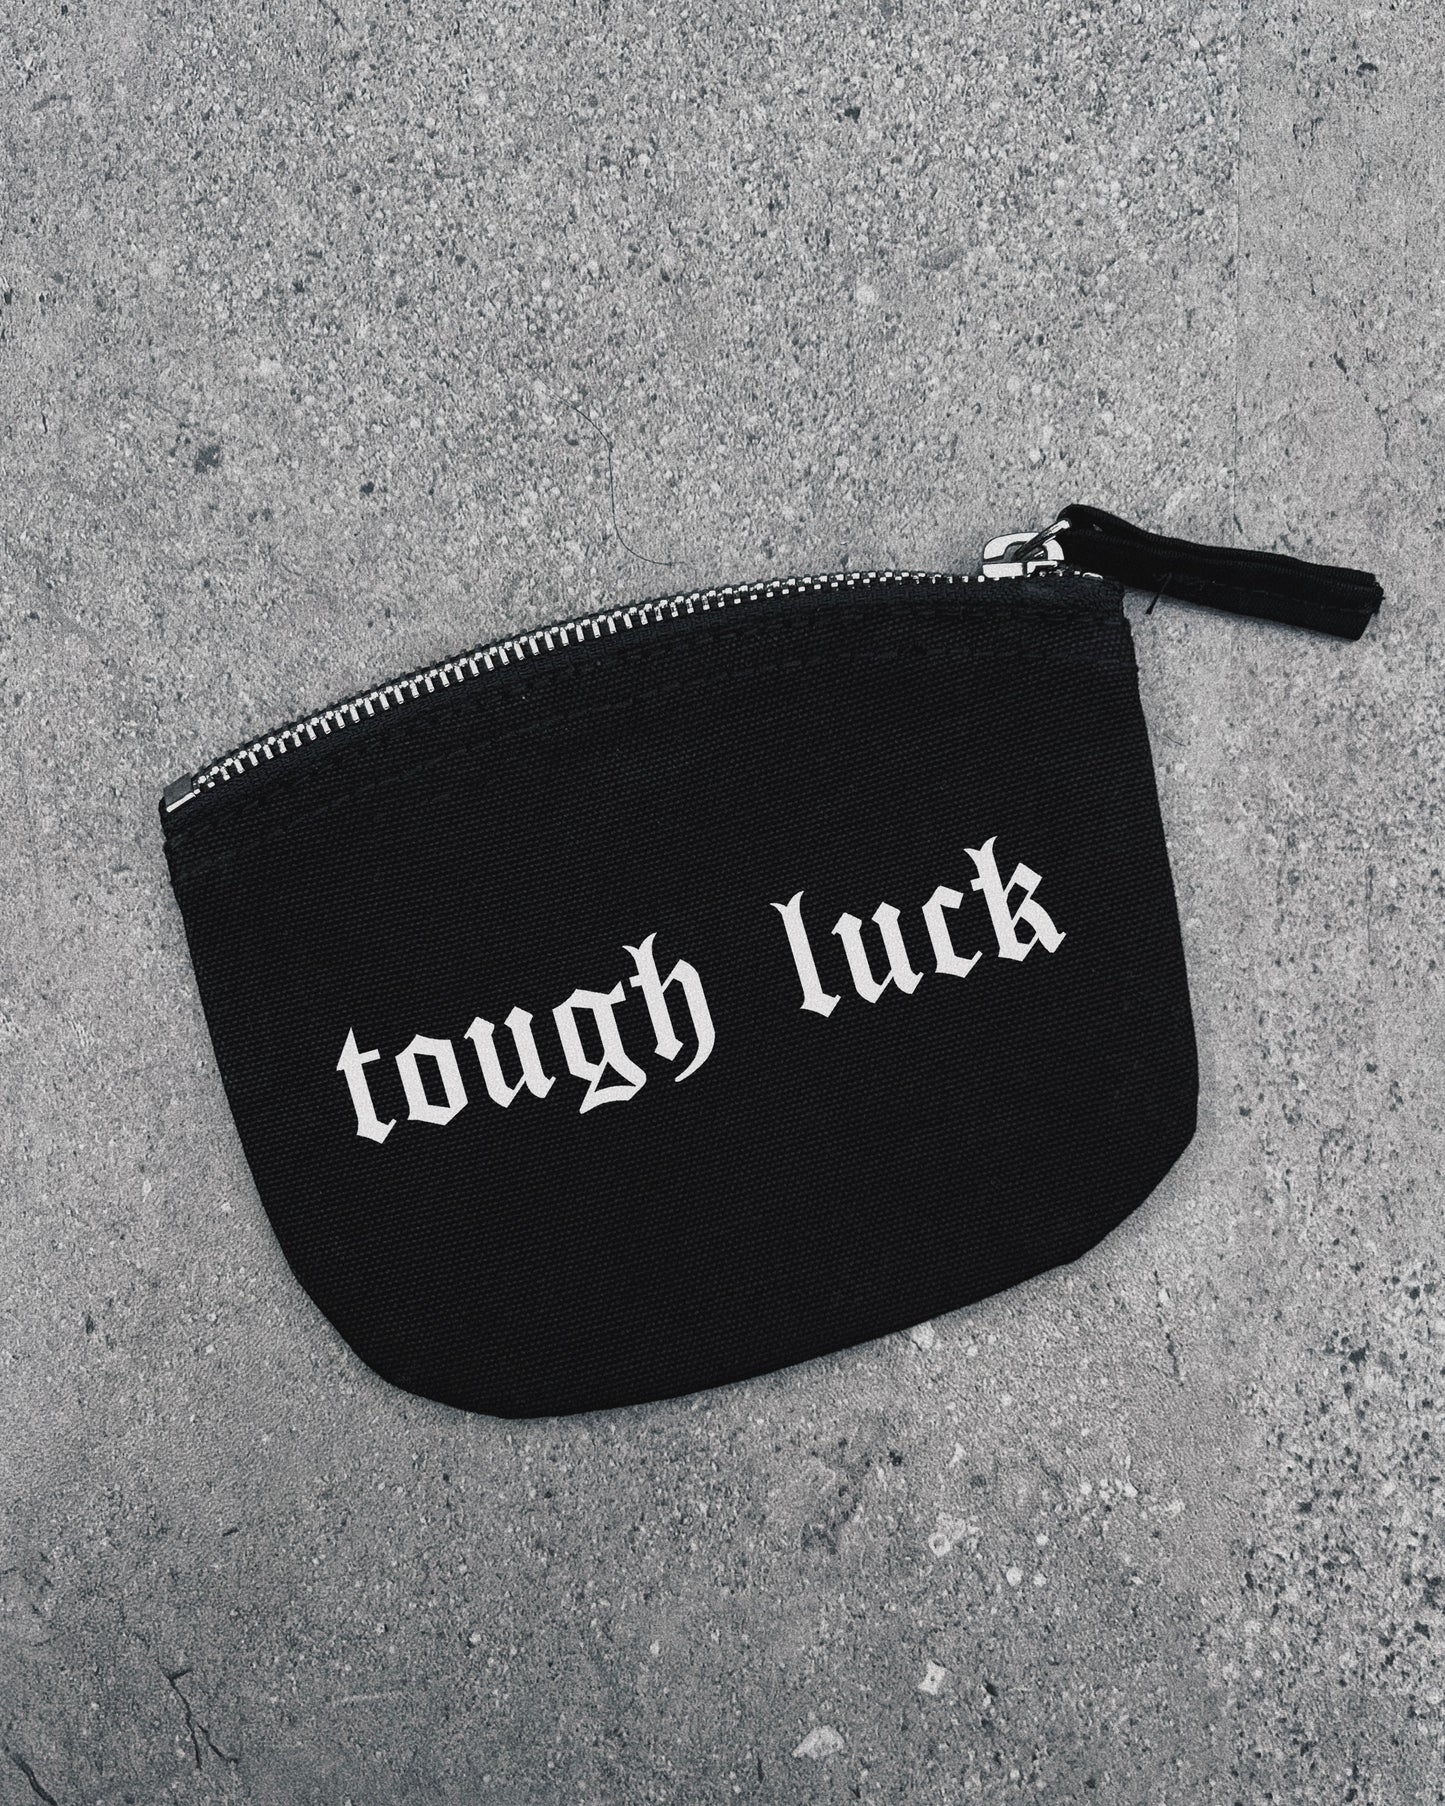 Tough Luck - Mini Pouch